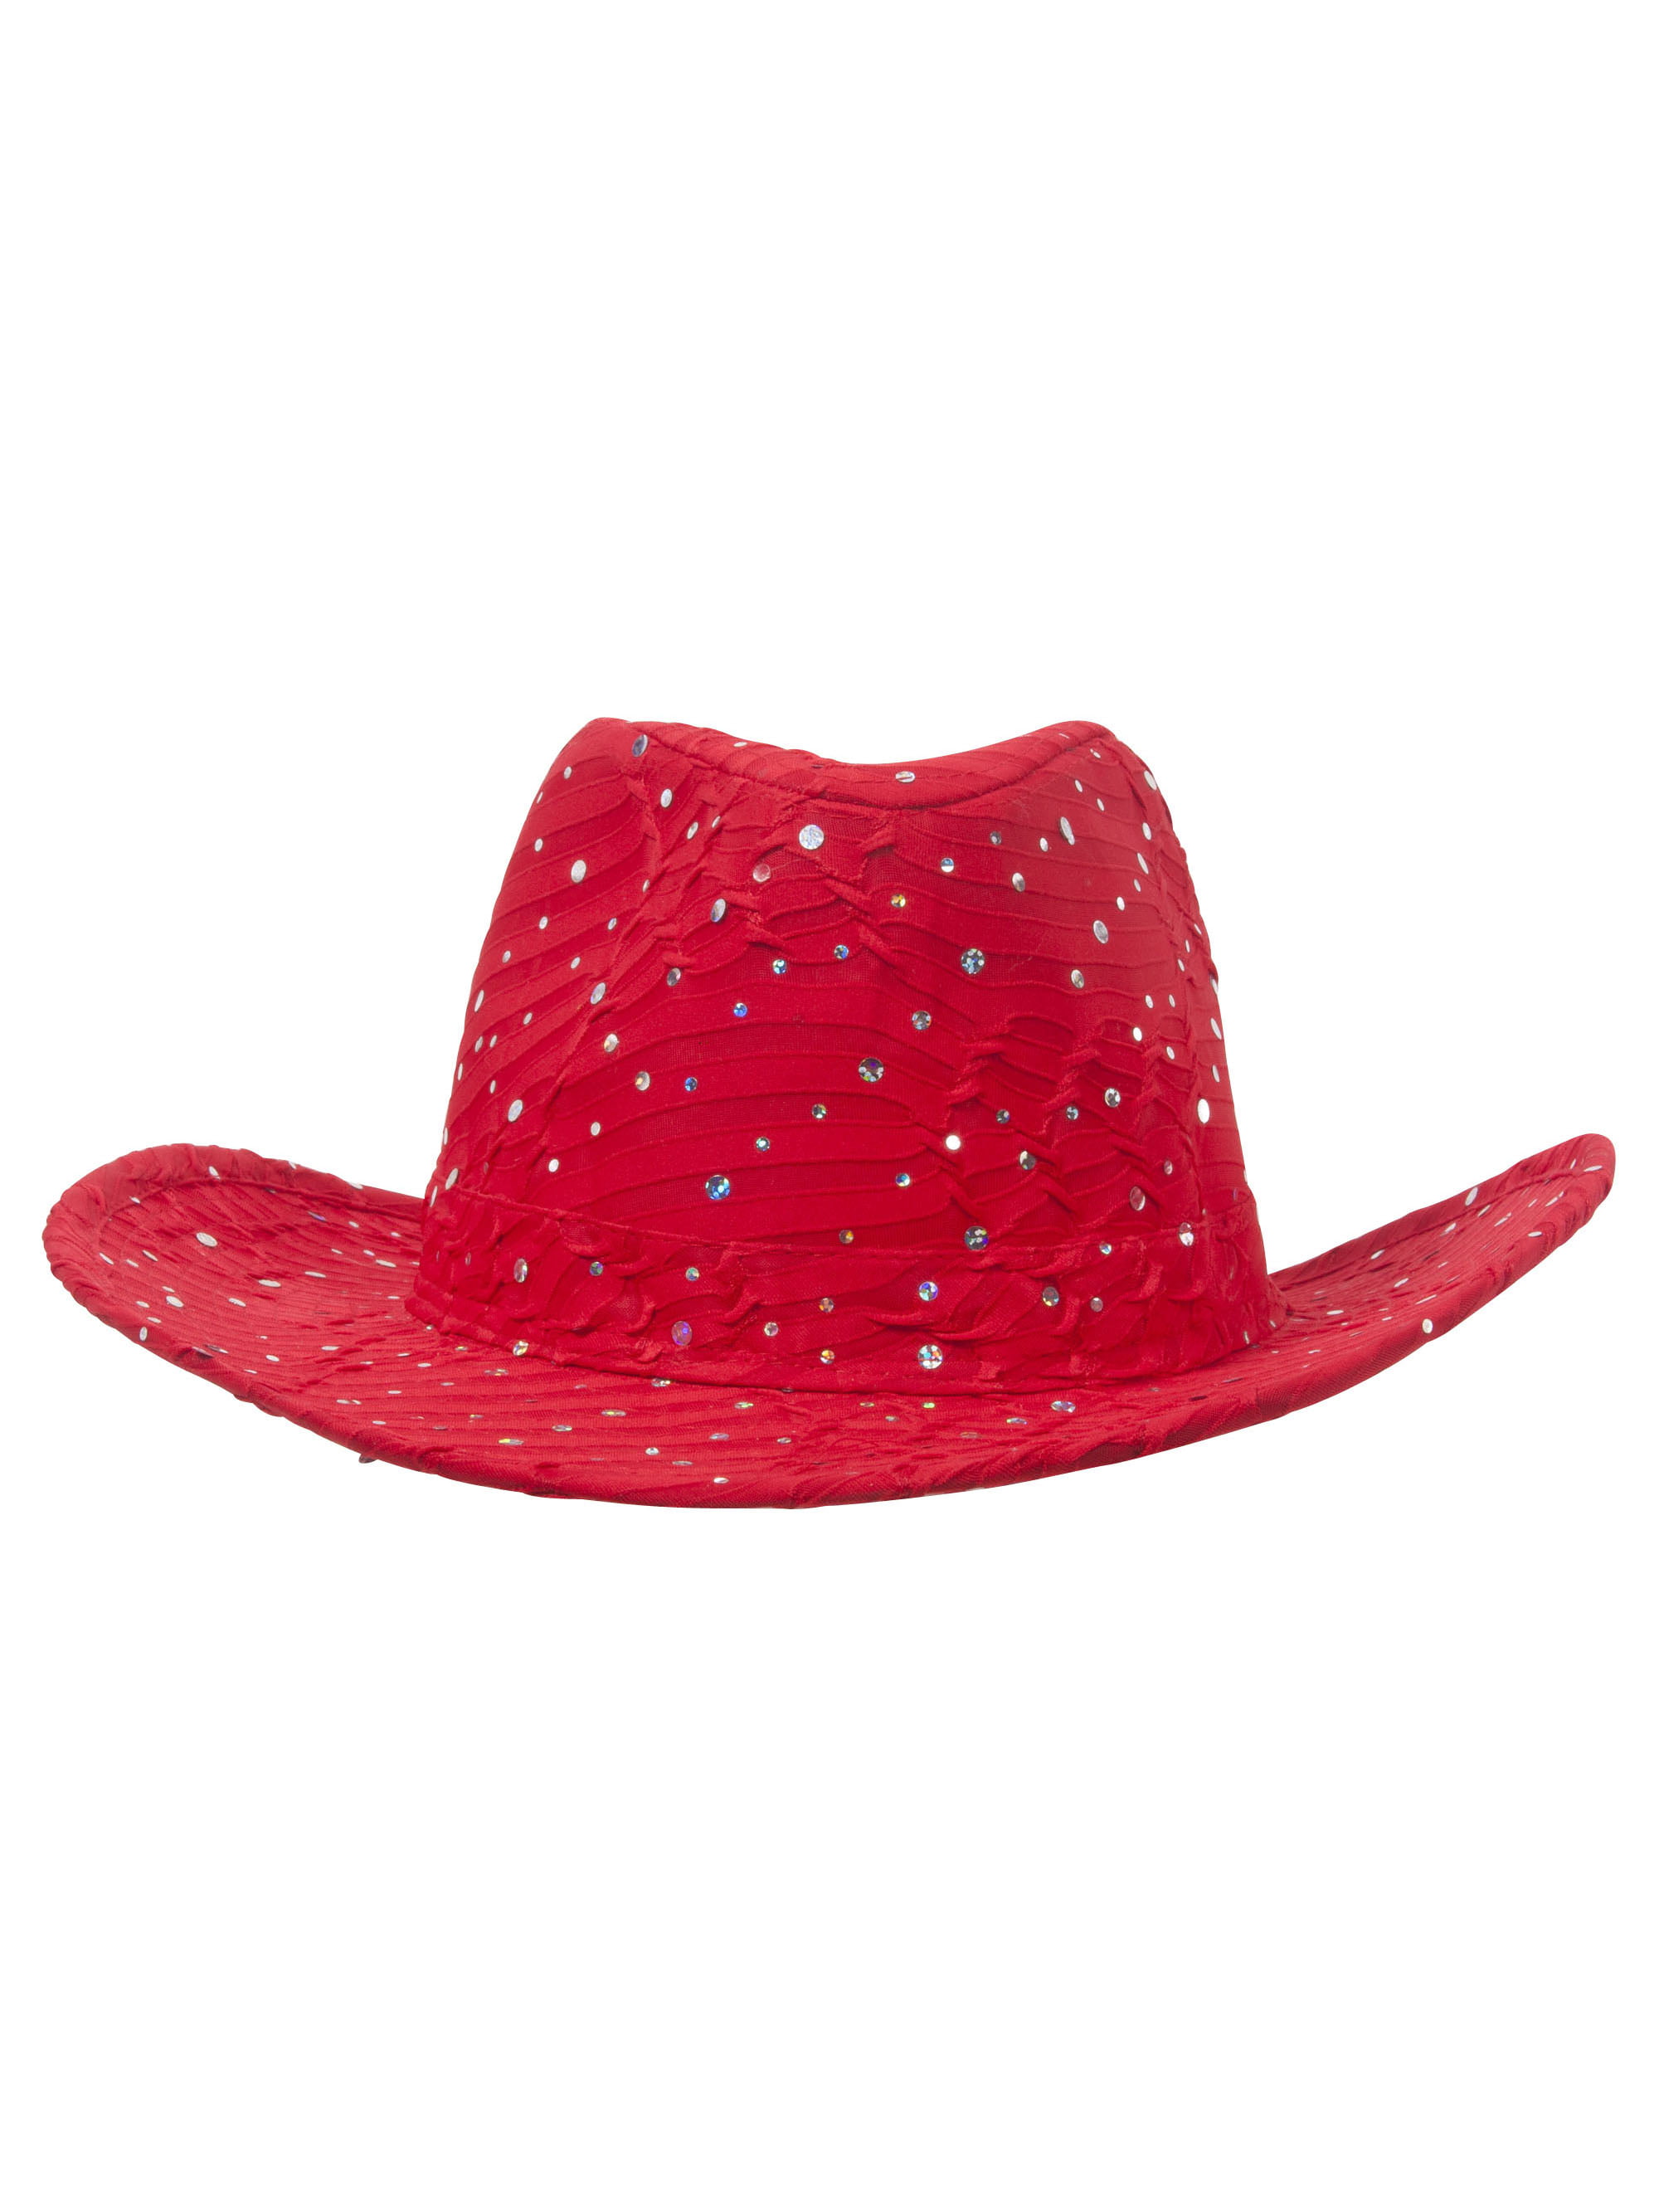 SEQUIN SILVER STAR COWBOY HAT ladies womens mens cap sparkle dance hat costume 